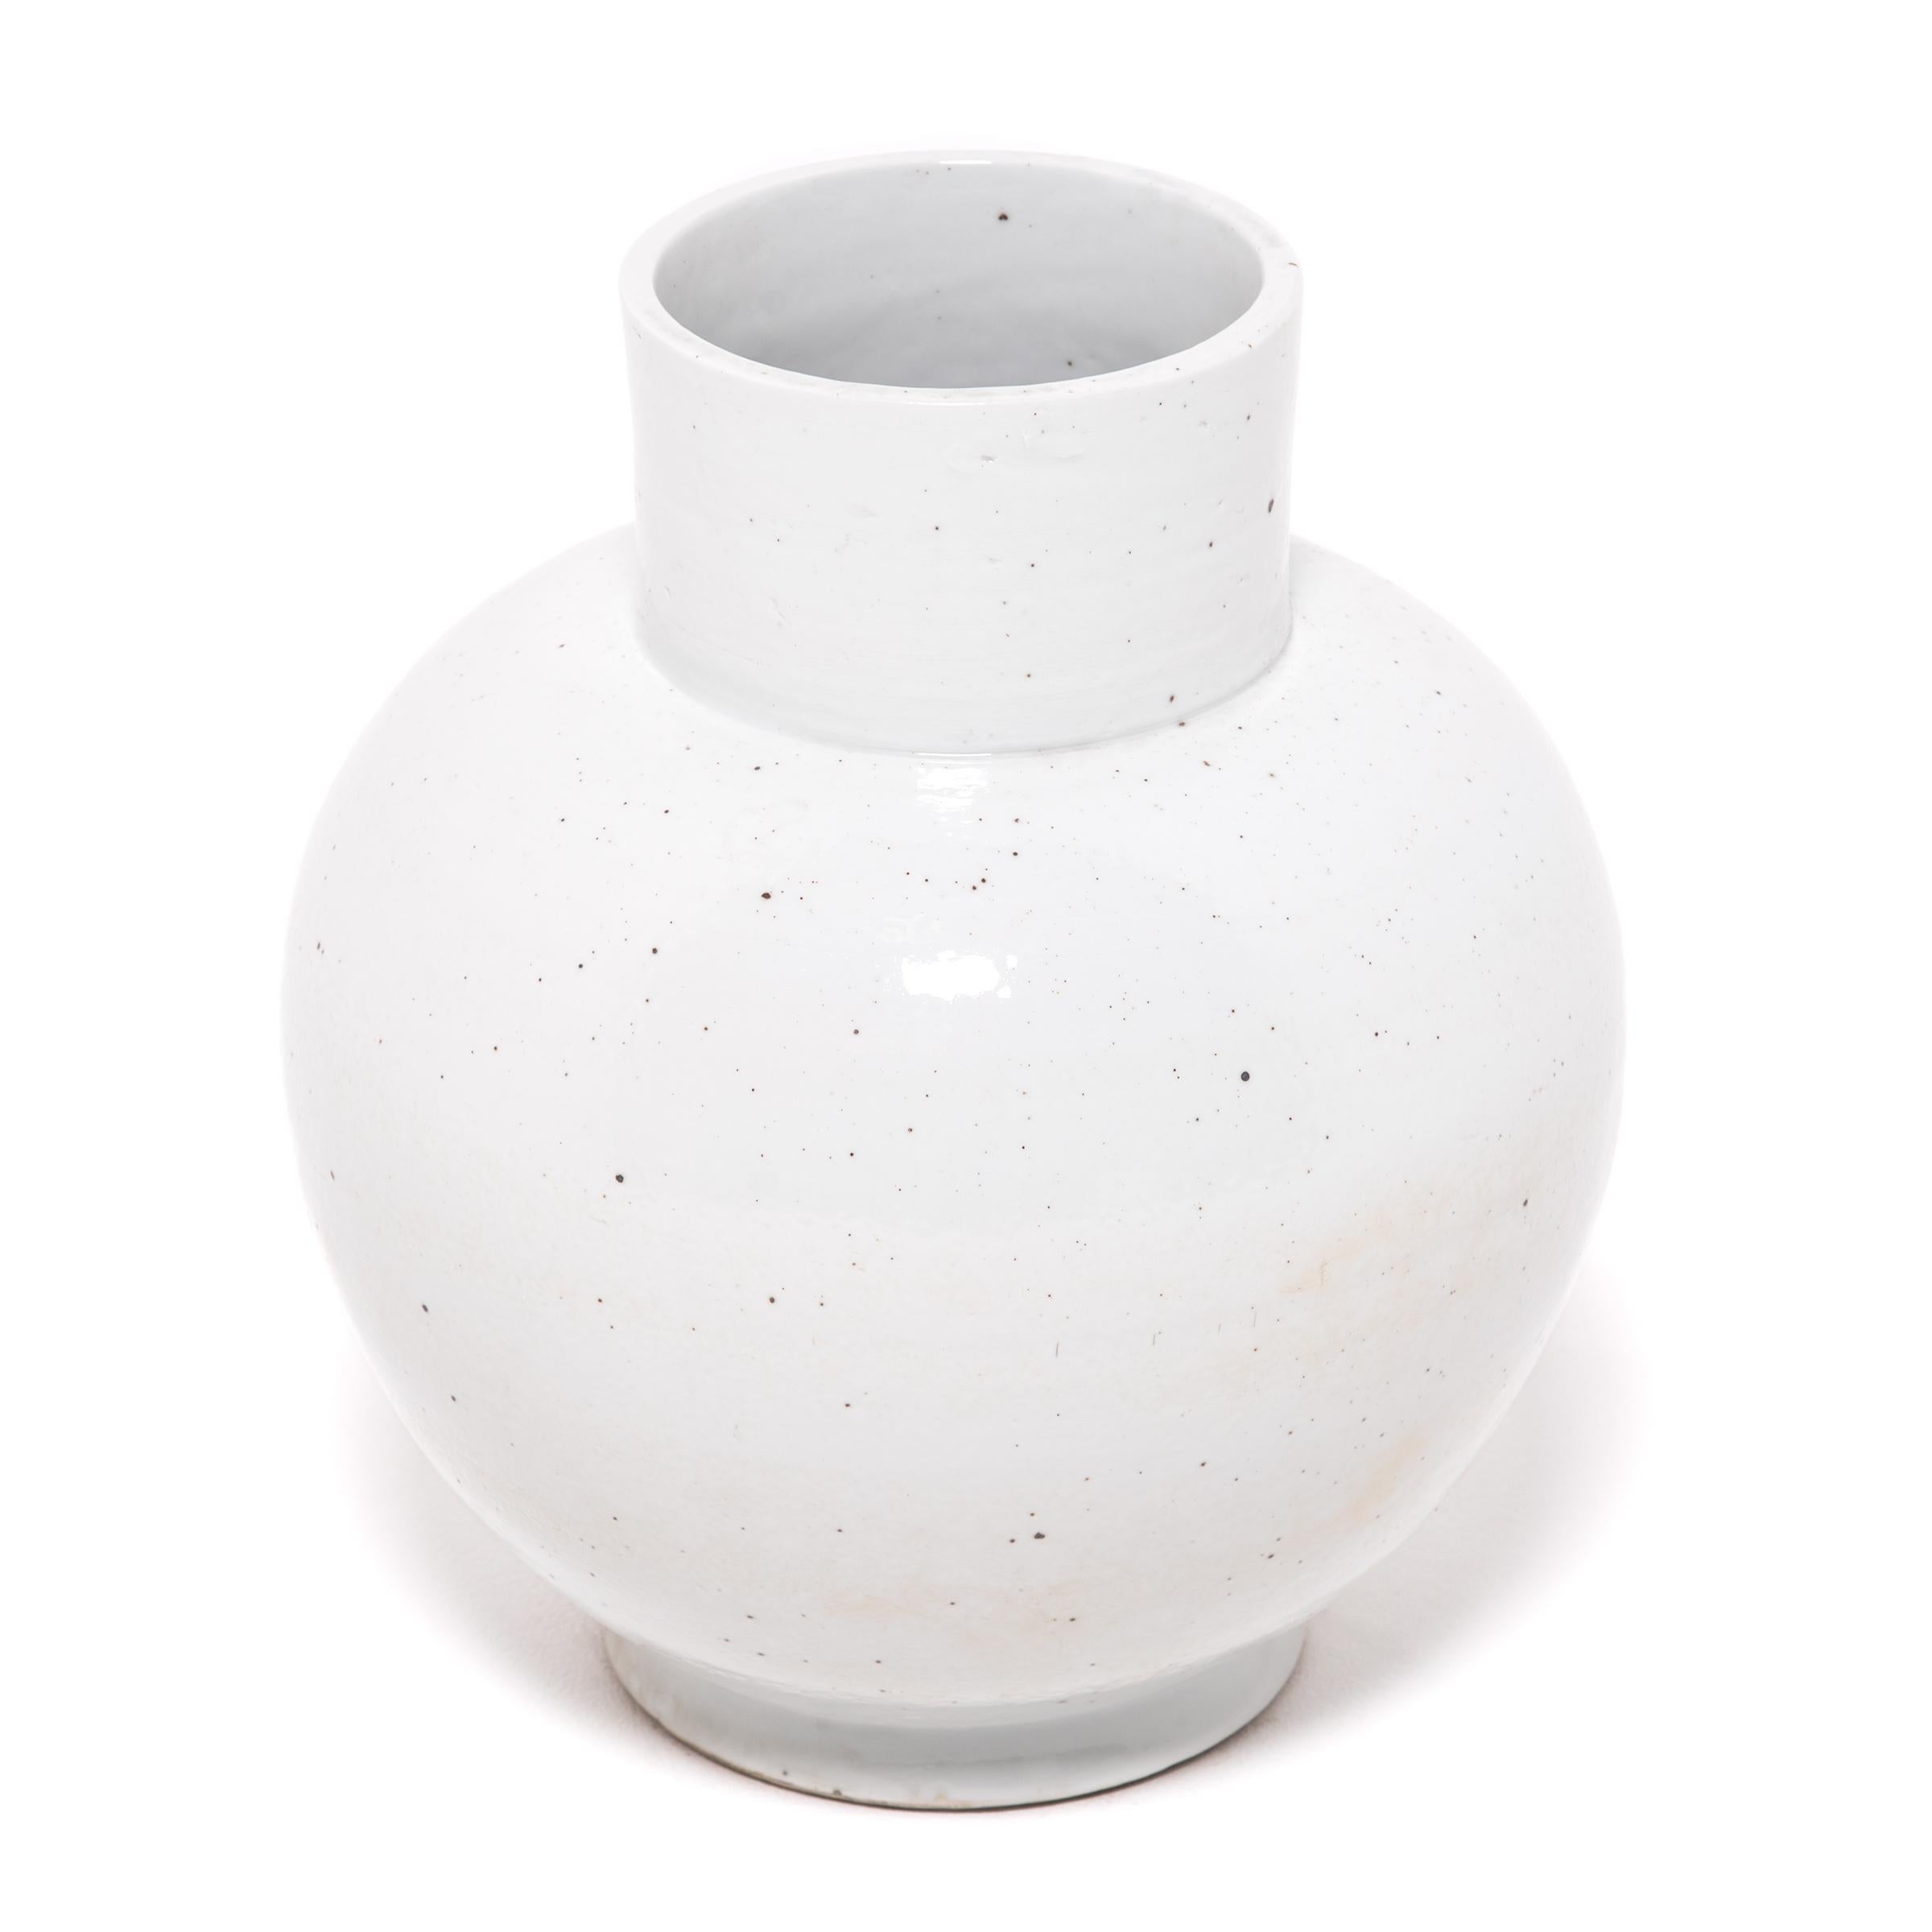 In Anlehnung an die lange chinesische Tradition der monochromen Keramik ist diese auffällige Vase mit kurzem Hals in eine milchig weiße Glasur gehüllt. Die von Kunsthandwerkern in der historischen chinesischen Provinz Jiangxi gefertigte runde Vase